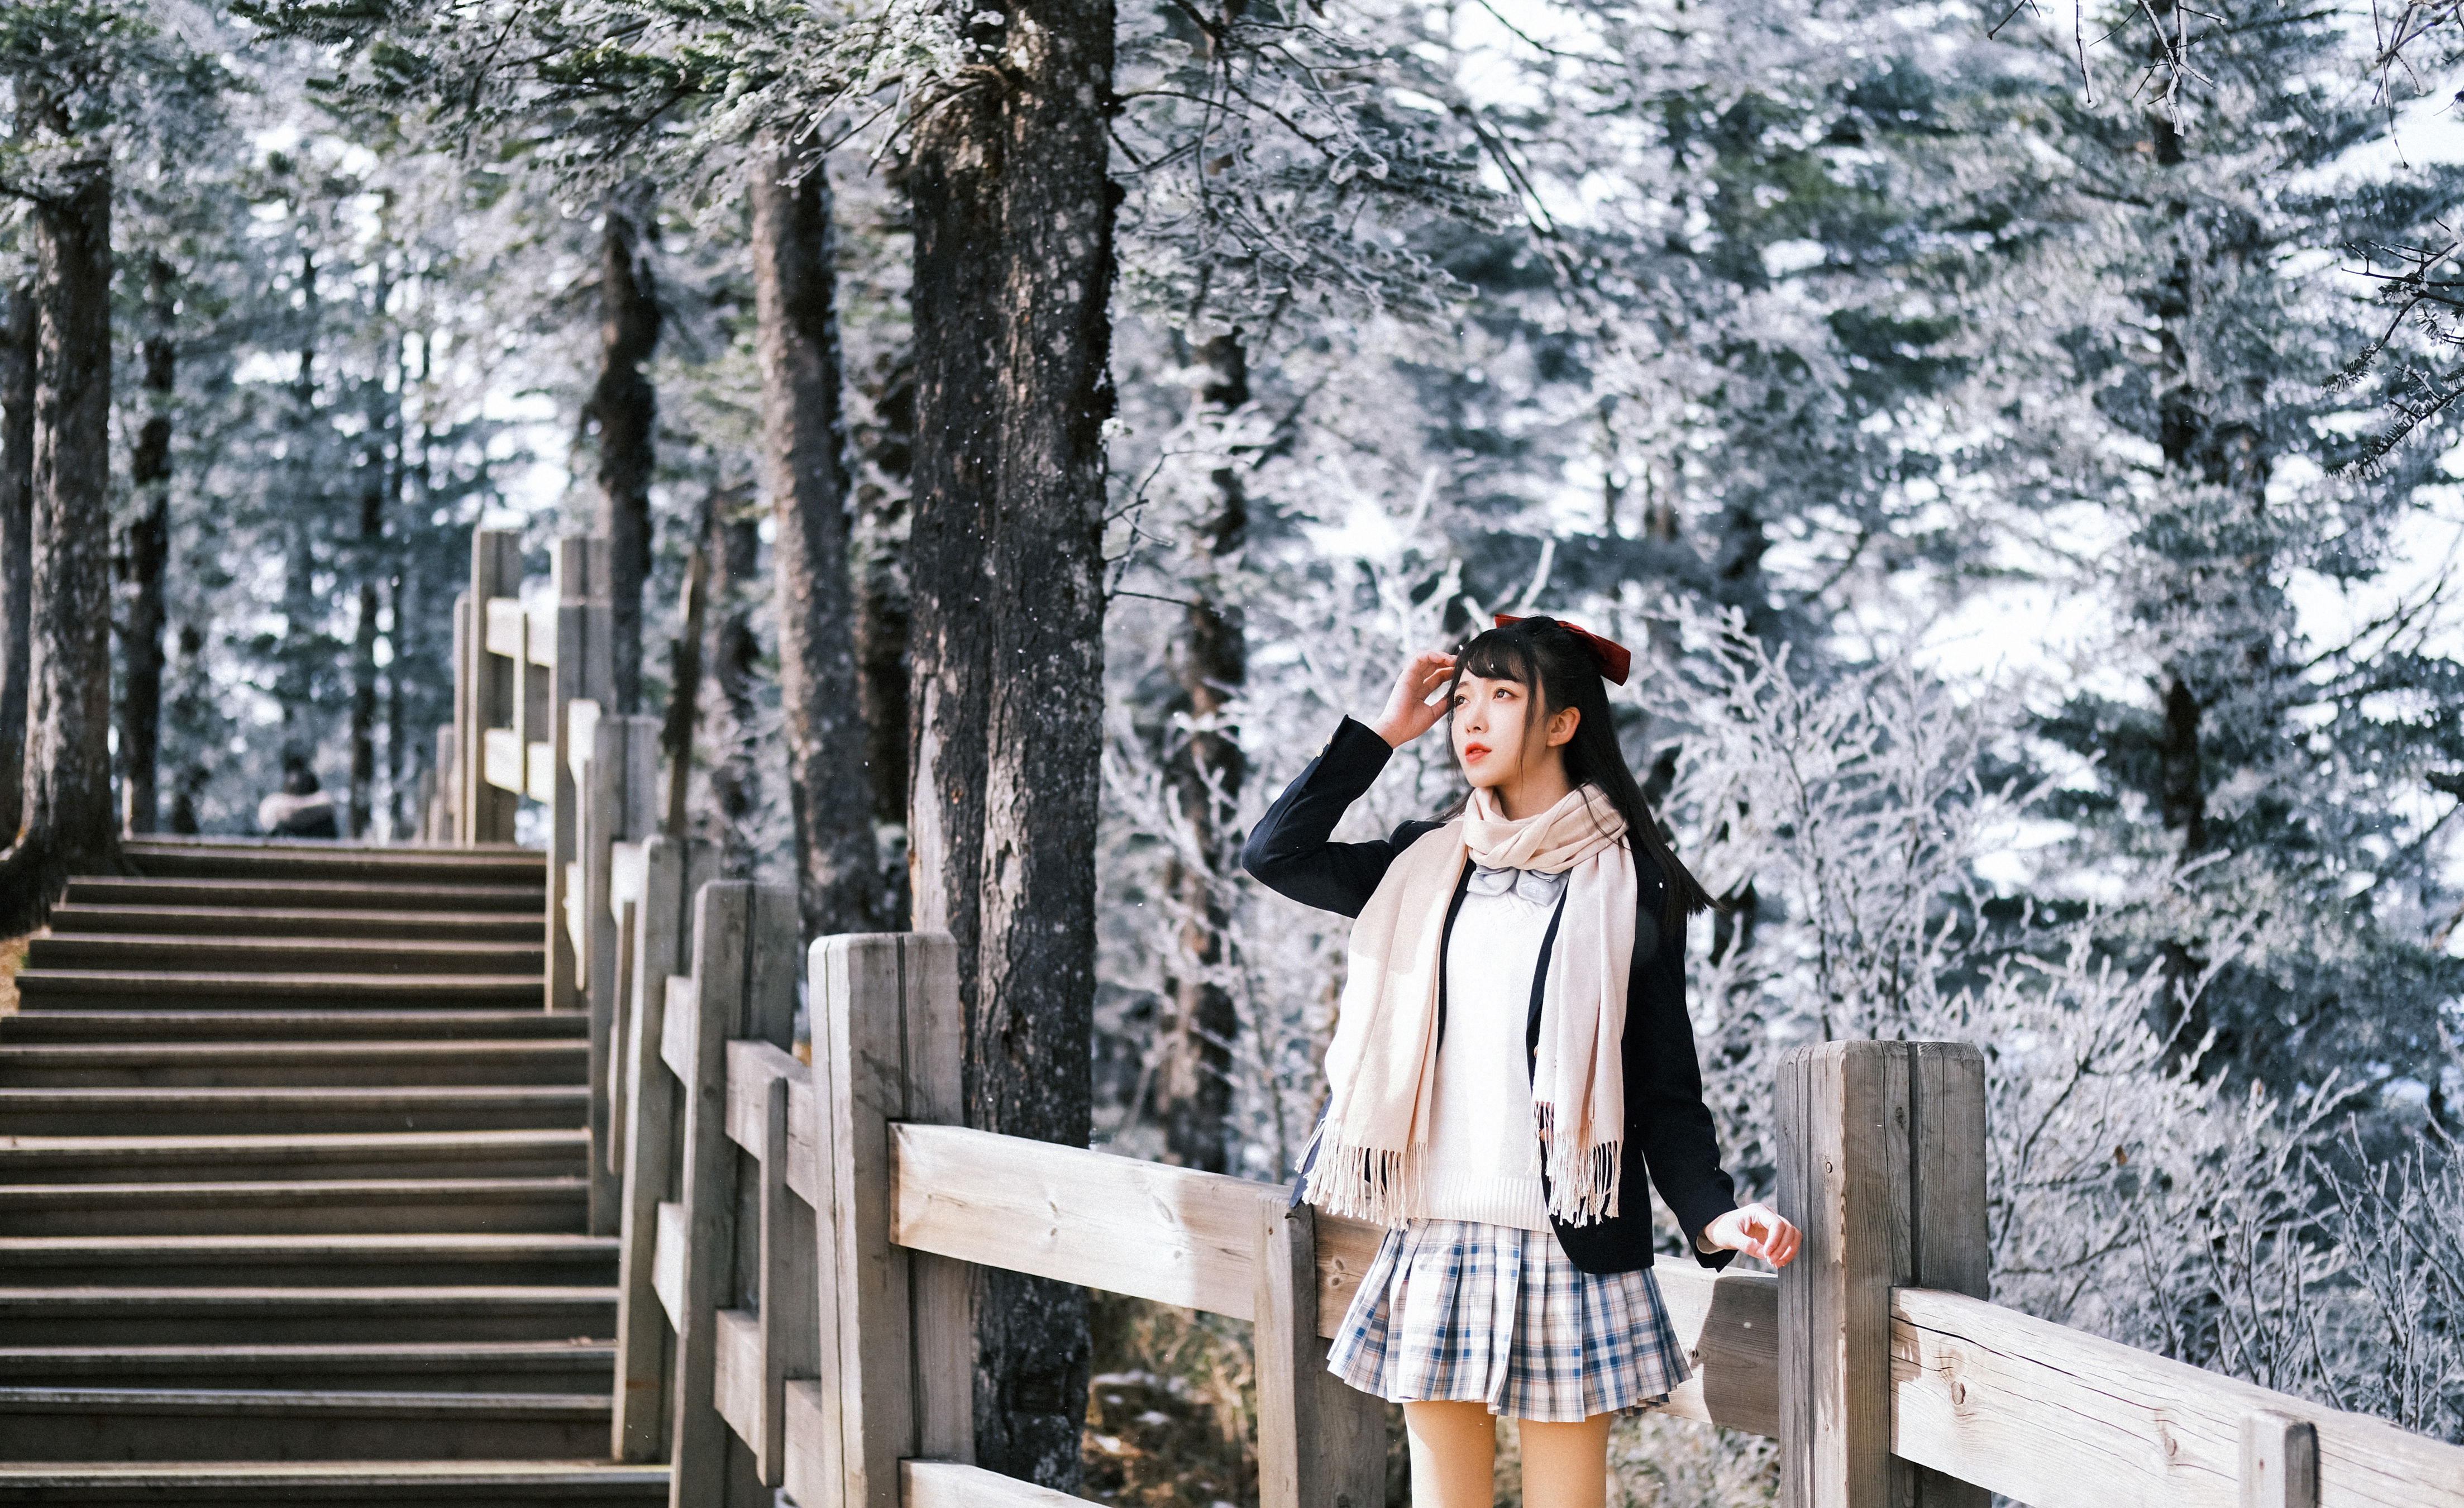 日系少女雪景写真 日系 少女 JK 写真 冬天 雪景